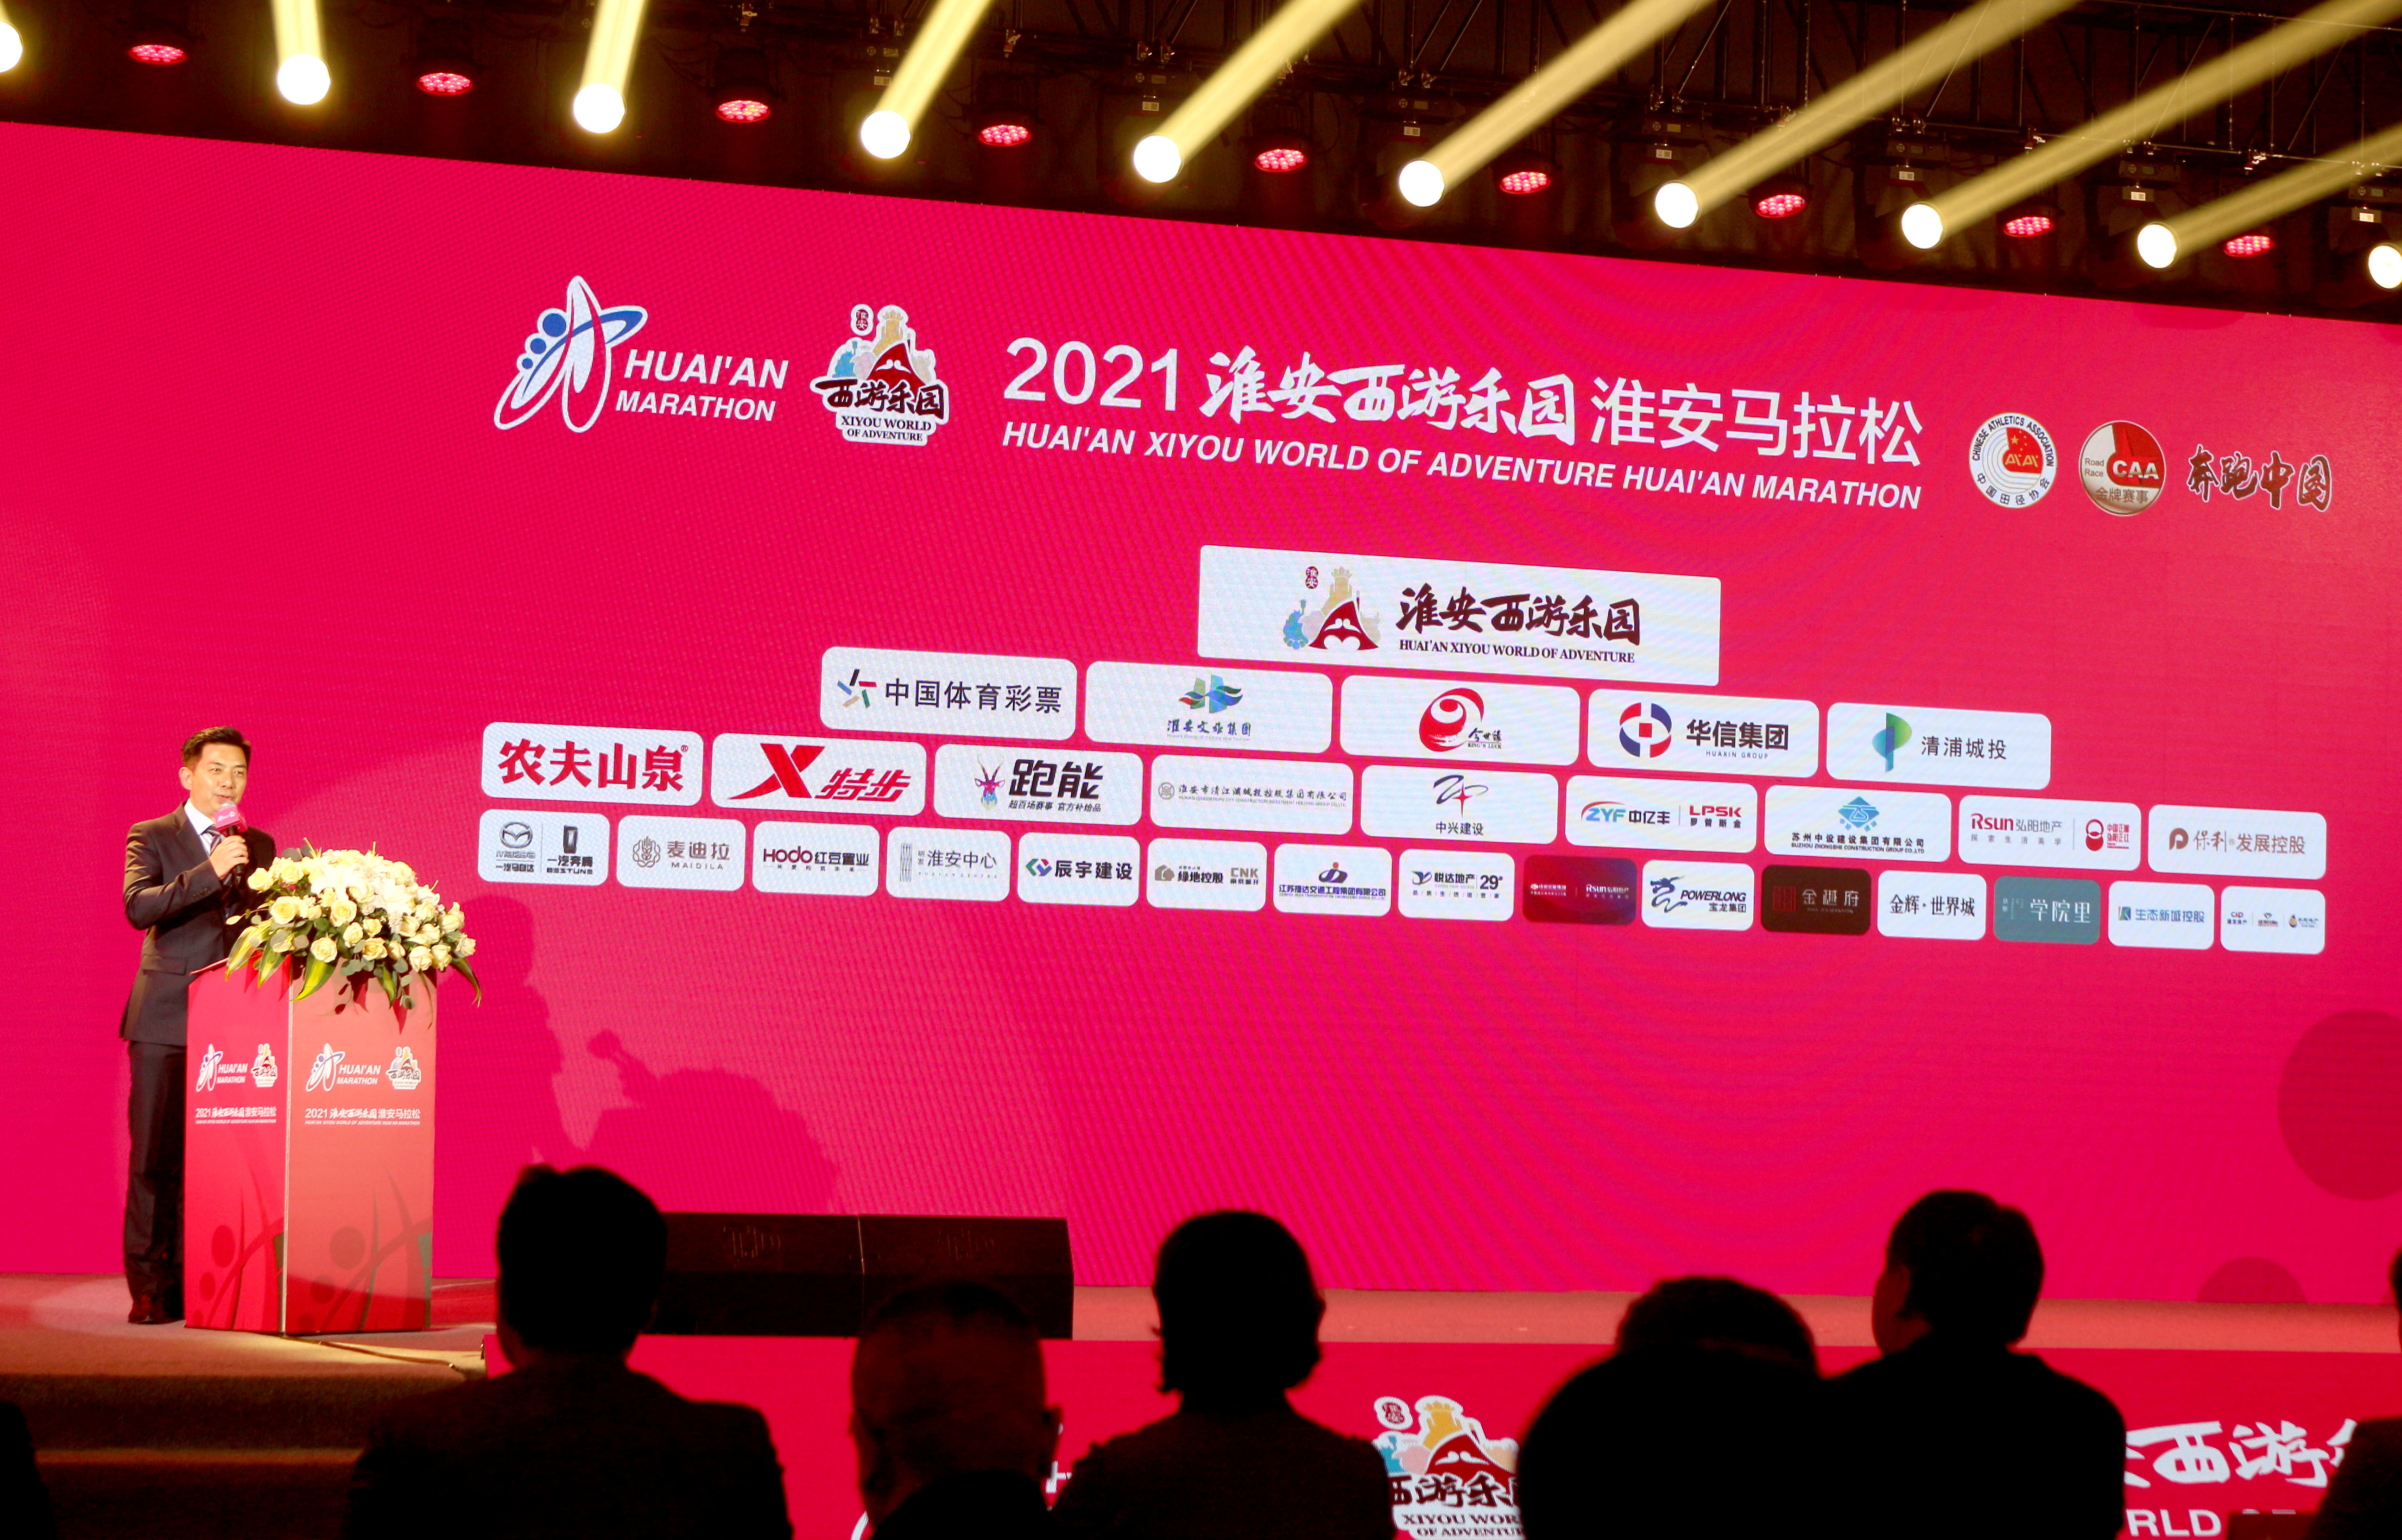 苏州中设建设集团冠名赞助2021年淮安西游乐园淮安马拉松赛